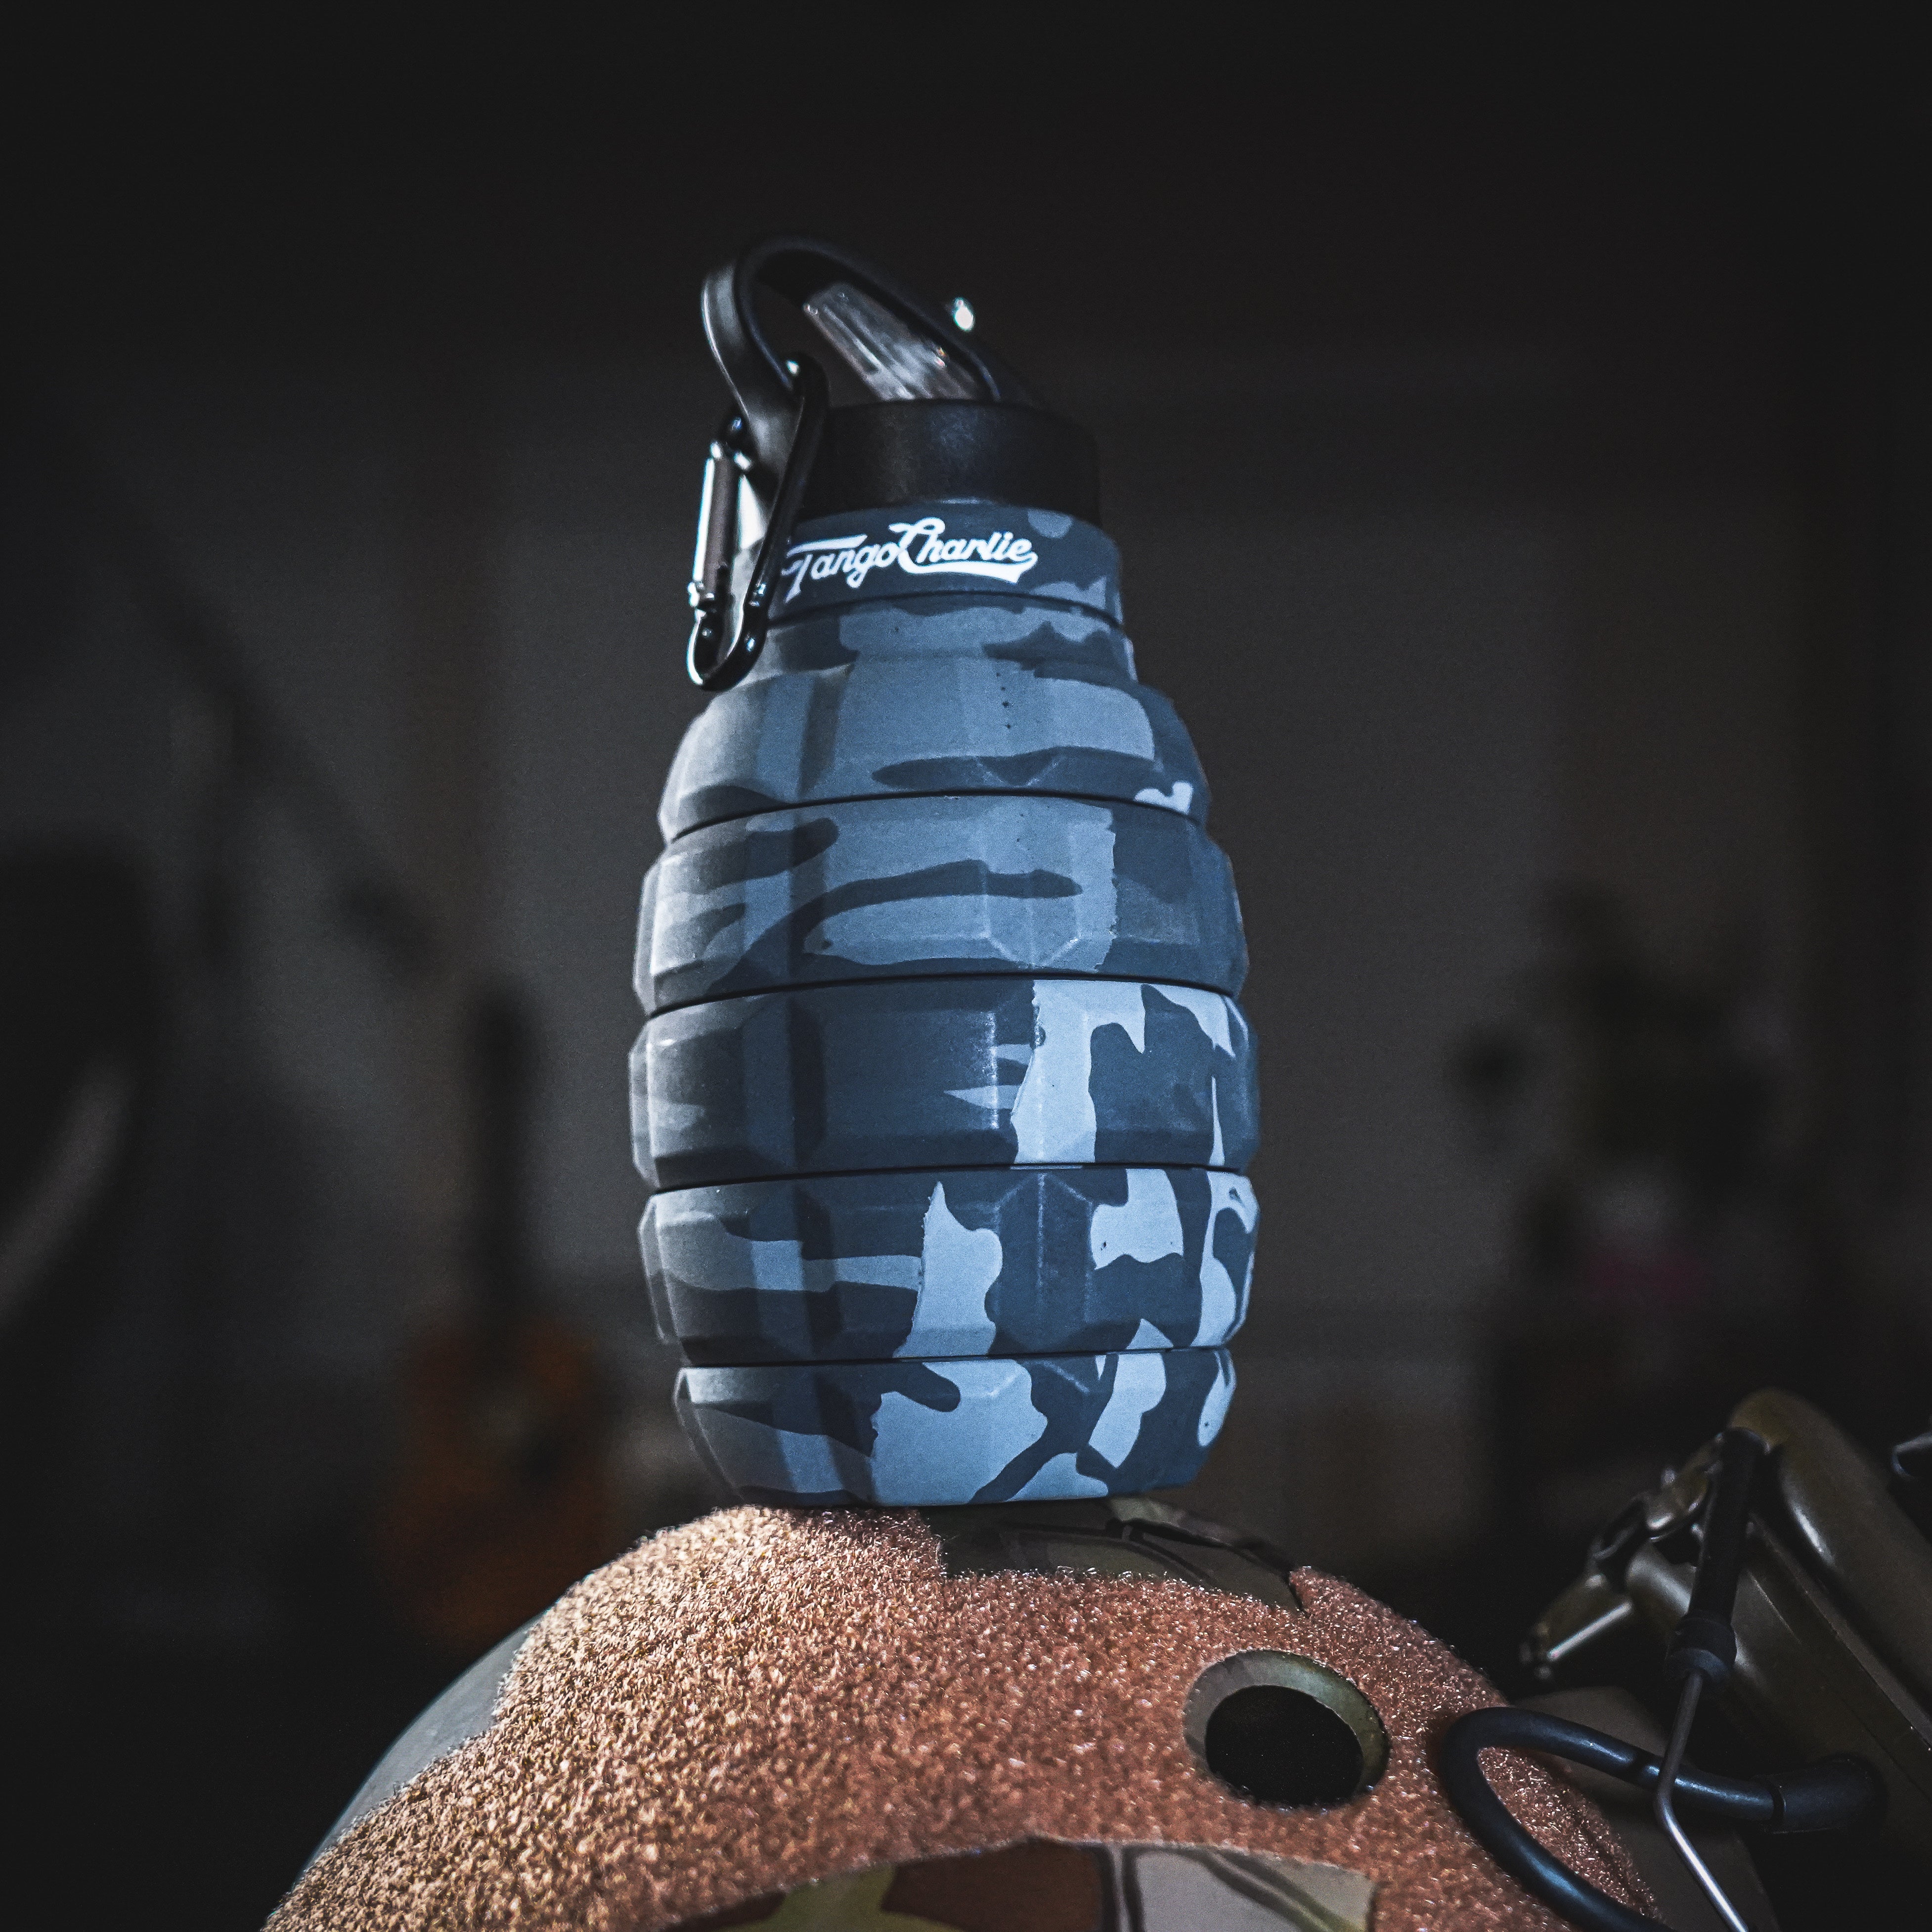 Grenade Foldable Water Bottle - 20 oz